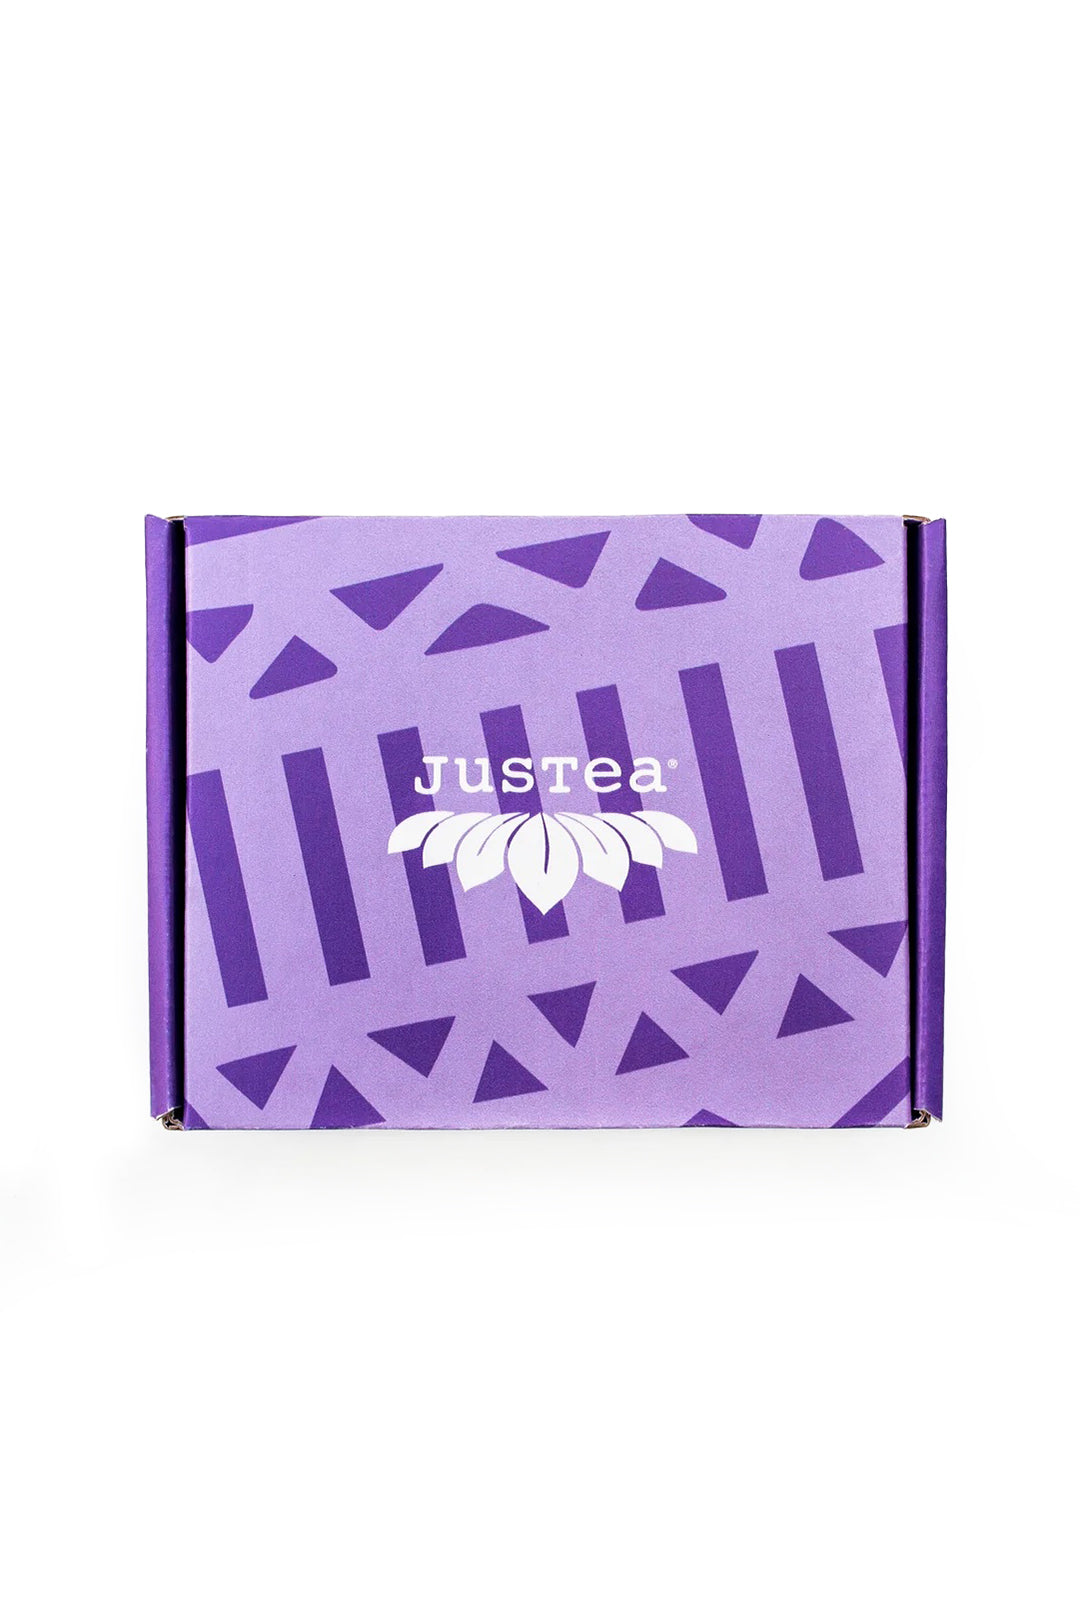 JusTea® Loose Leaf Purple Tea Trio Gift Box